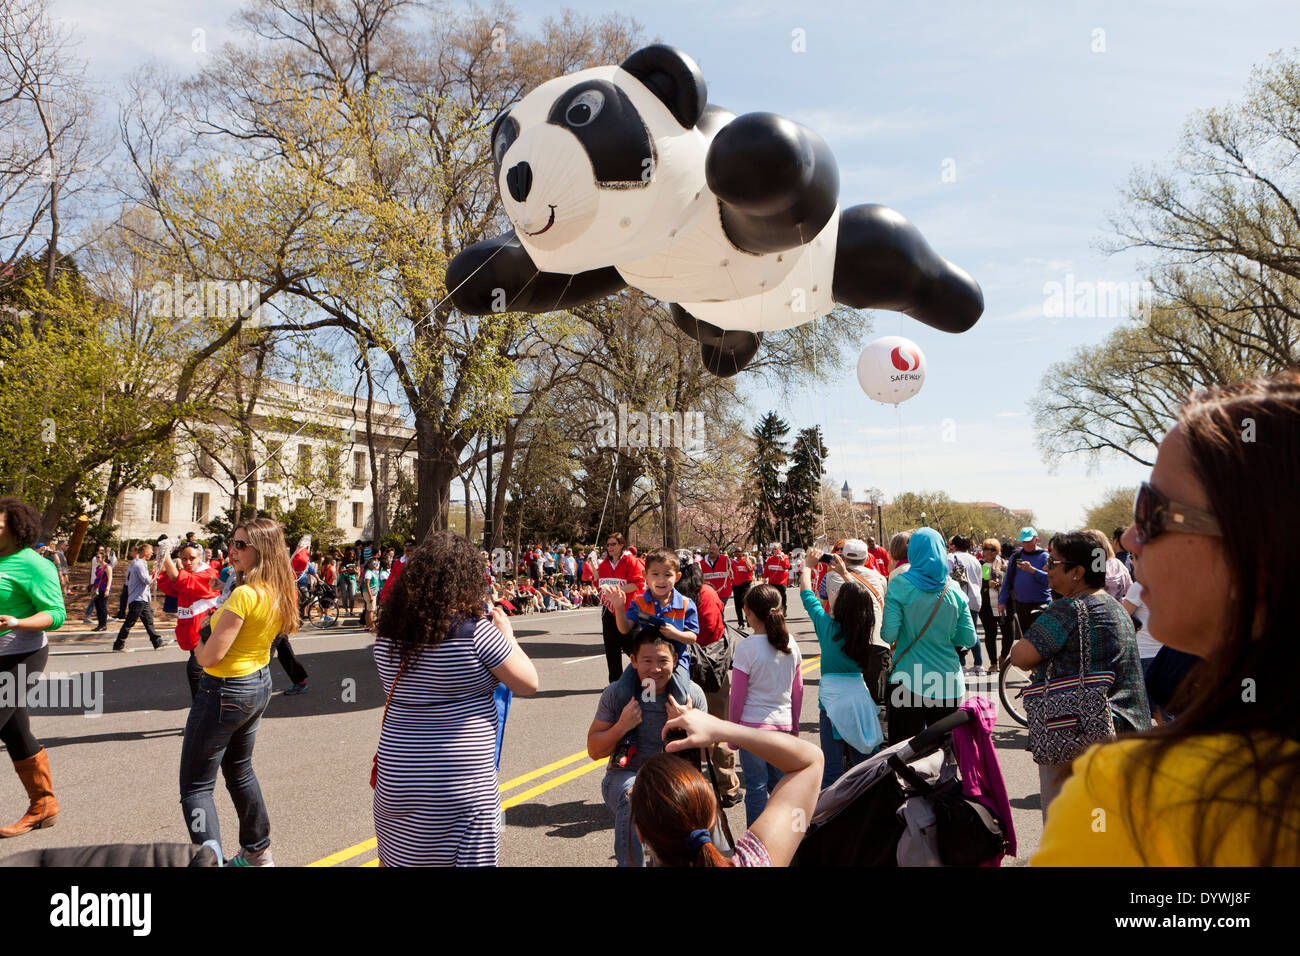 Ballon ours panda flotter à la Cherry Blossom Festival - Washington, DC Banque D'Images